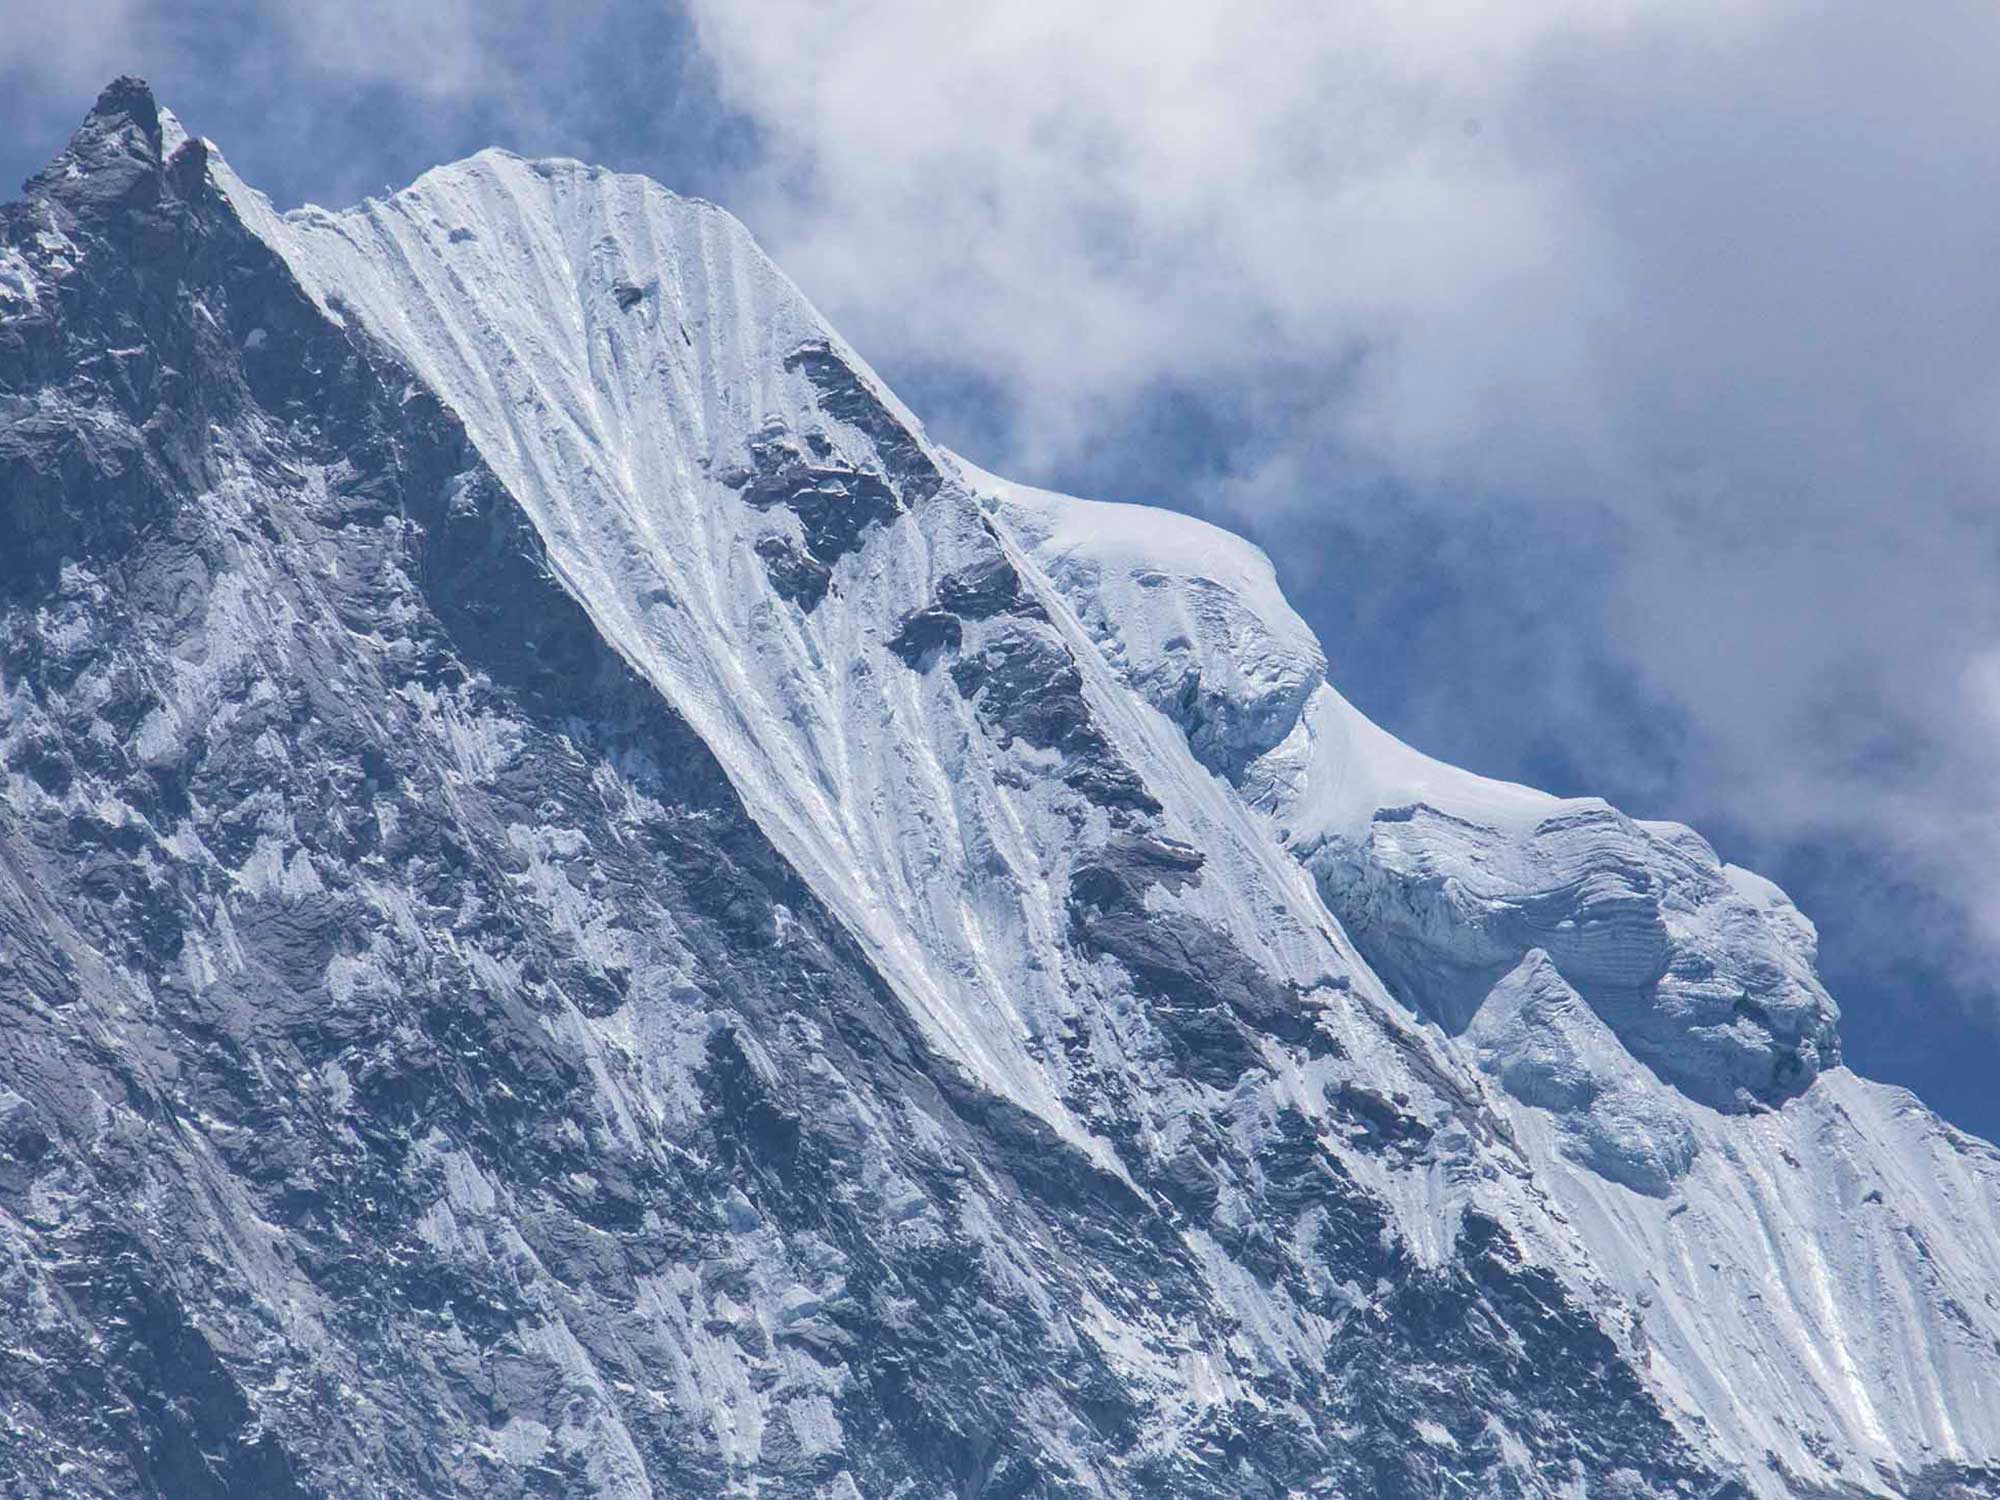 Fotos de amenazas de derretimiento de los glaciares del Himalaya